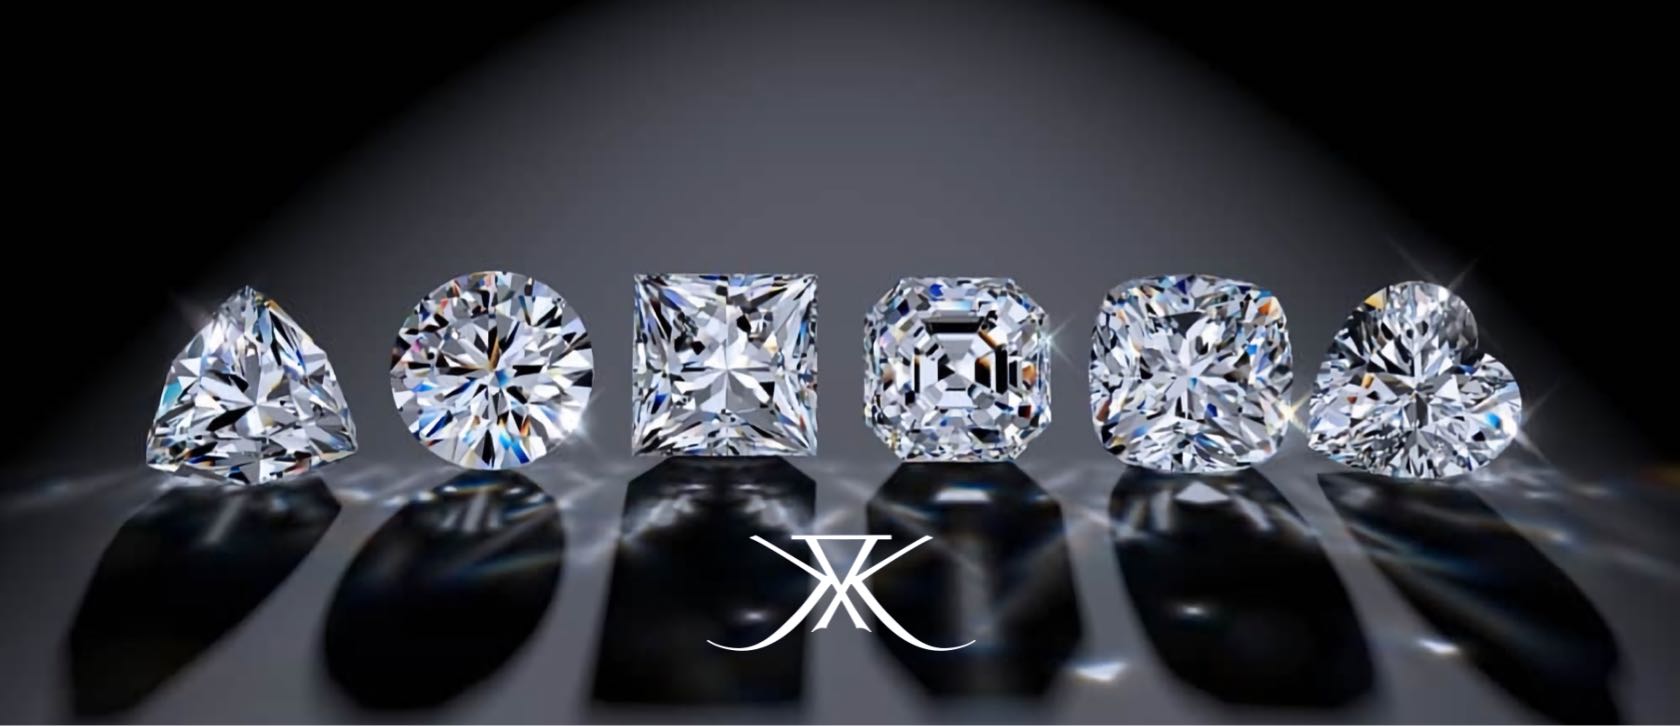 Бриллианты hpht first class diamonds. Бриллианты настоящие. Искусственные Алмазы.